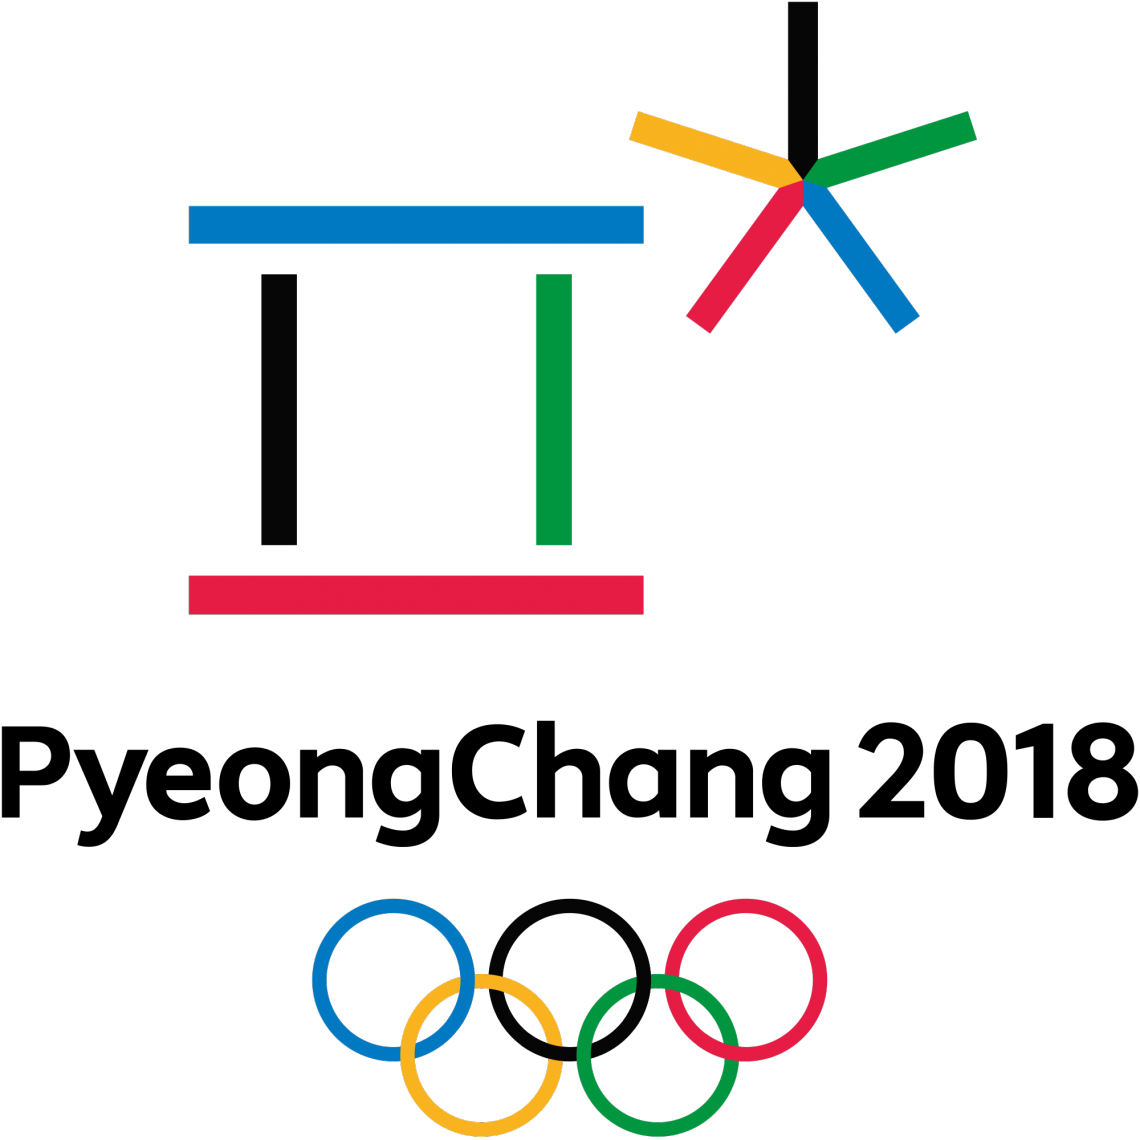 Polémiques autour des Jeux olympiques de Pyeongchang 2018